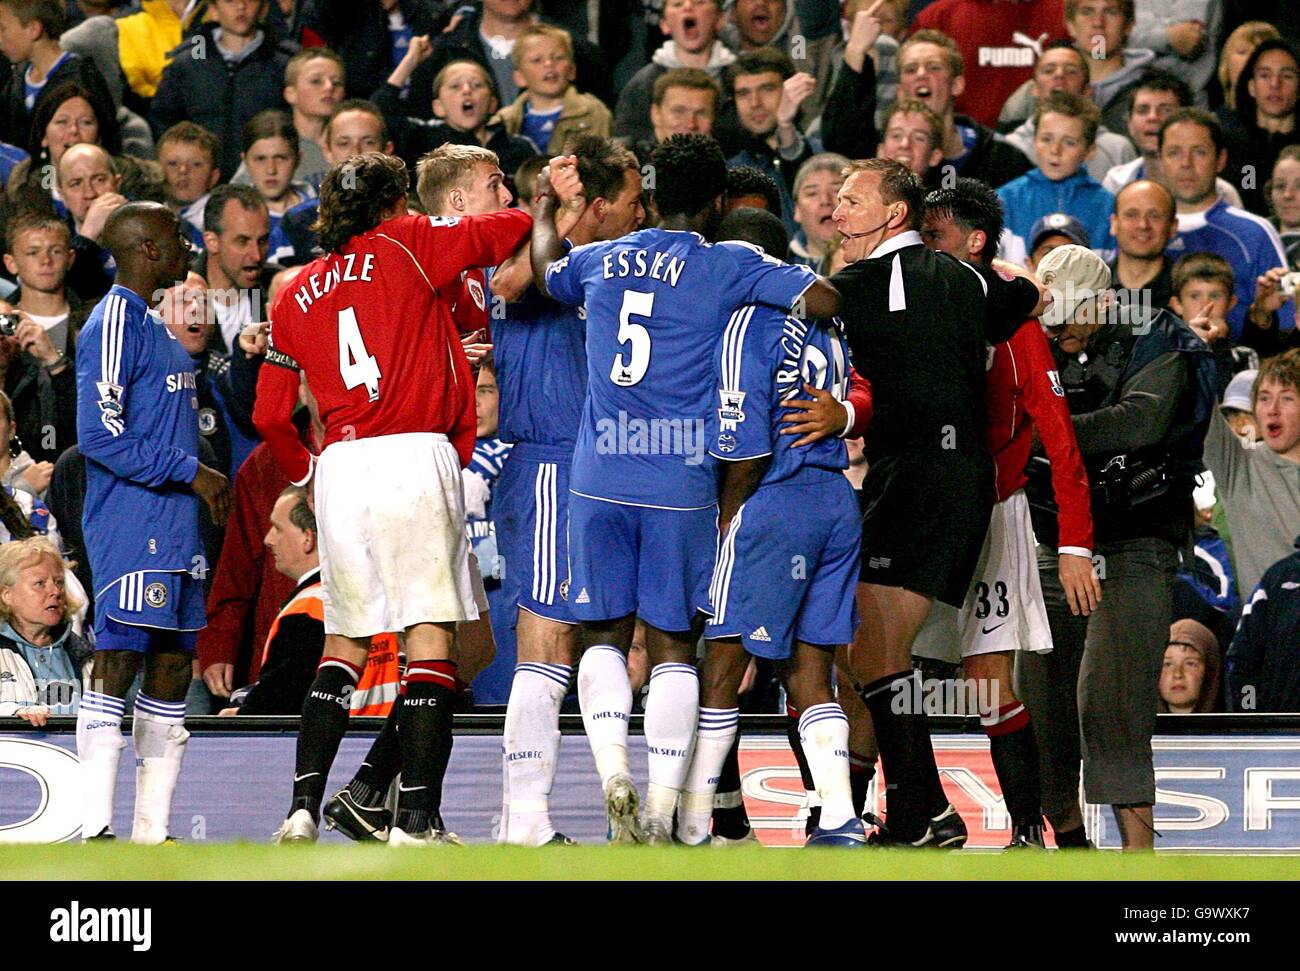 Fußball - FA Barclays Premiership - Chelsea / Manchester United - Stamford Bridge. Die Spieler von Manchester United und Chelsea konfrontieren sich nach einem Foul von Chris Eagles. Stockfoto